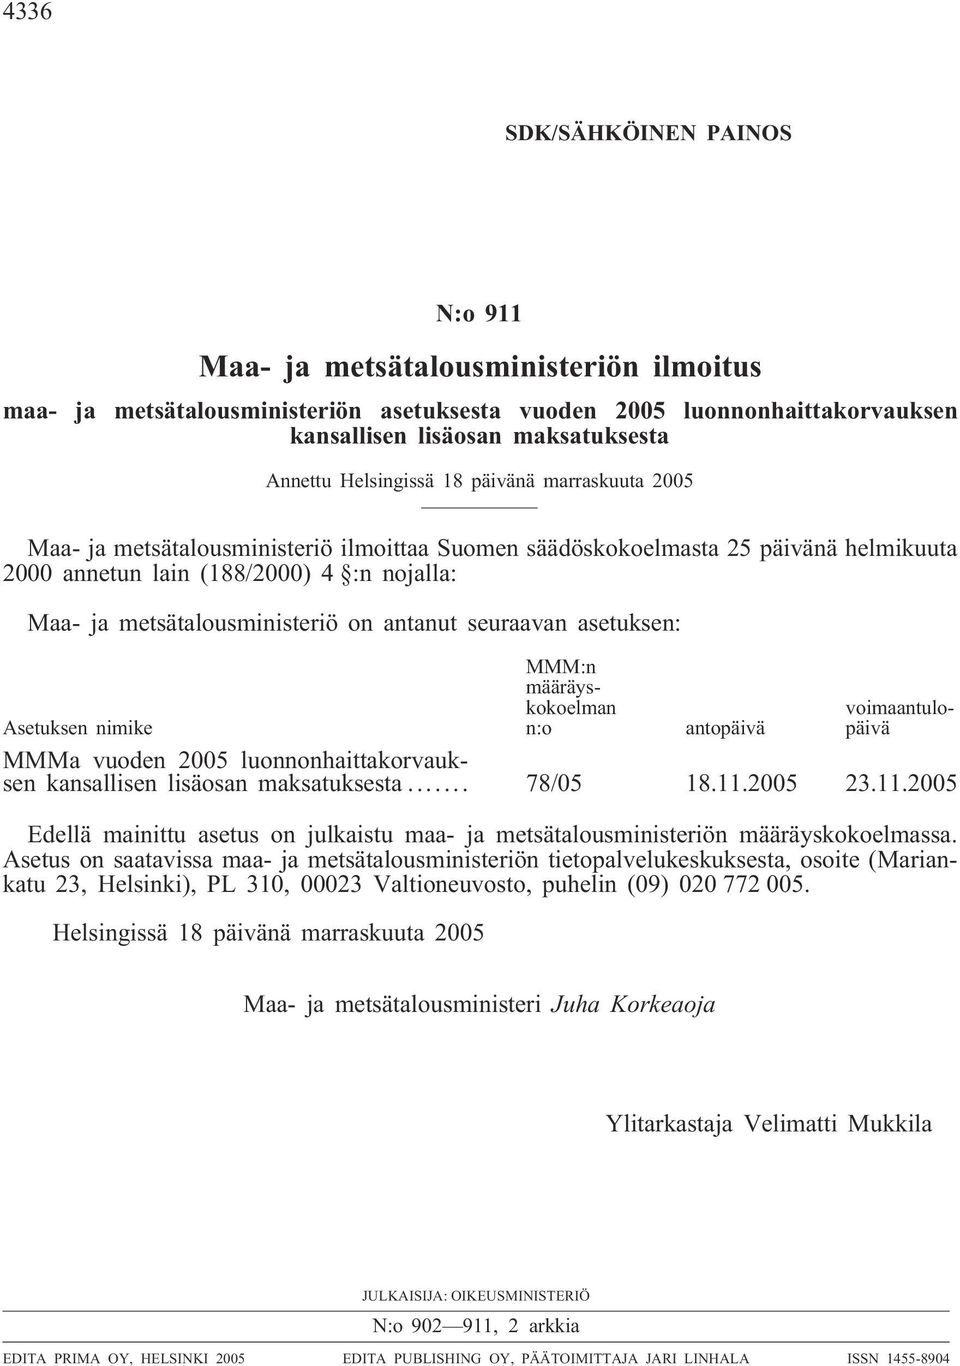 on antanut seuraavan asetuksen: MMM:n määräyskokoelman n:o voimaantulopäivä Asetuksen nimike antopäivä MMMa vuoden 2005 luonnonhaittakorvauksen kansallisen lisäosan maksatuksesta... 78/05 18.11.